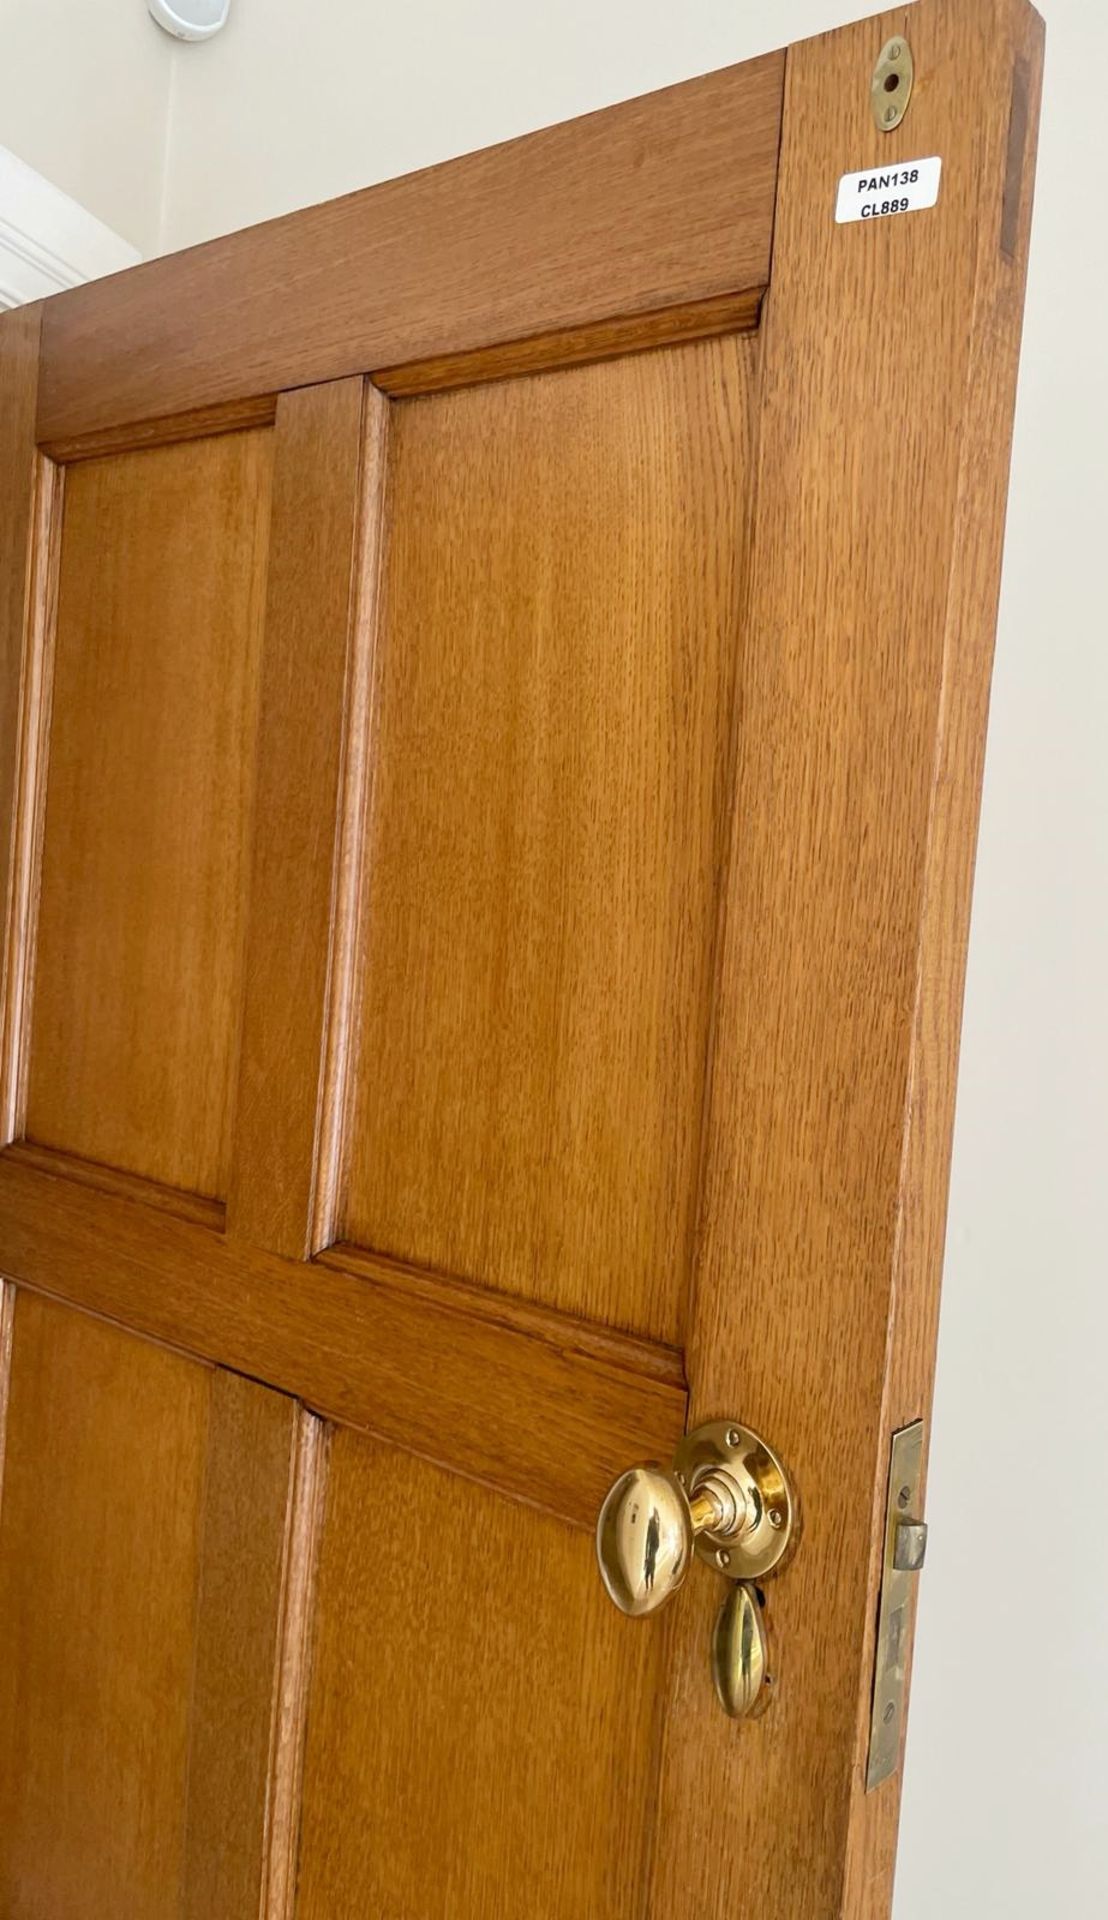 1 x Solid Wood Lockable Internal Door - Ref: PAN138 / 2MainKIT - CL896 - NO VAT ON THE HAMMER - - Image 6 of 7